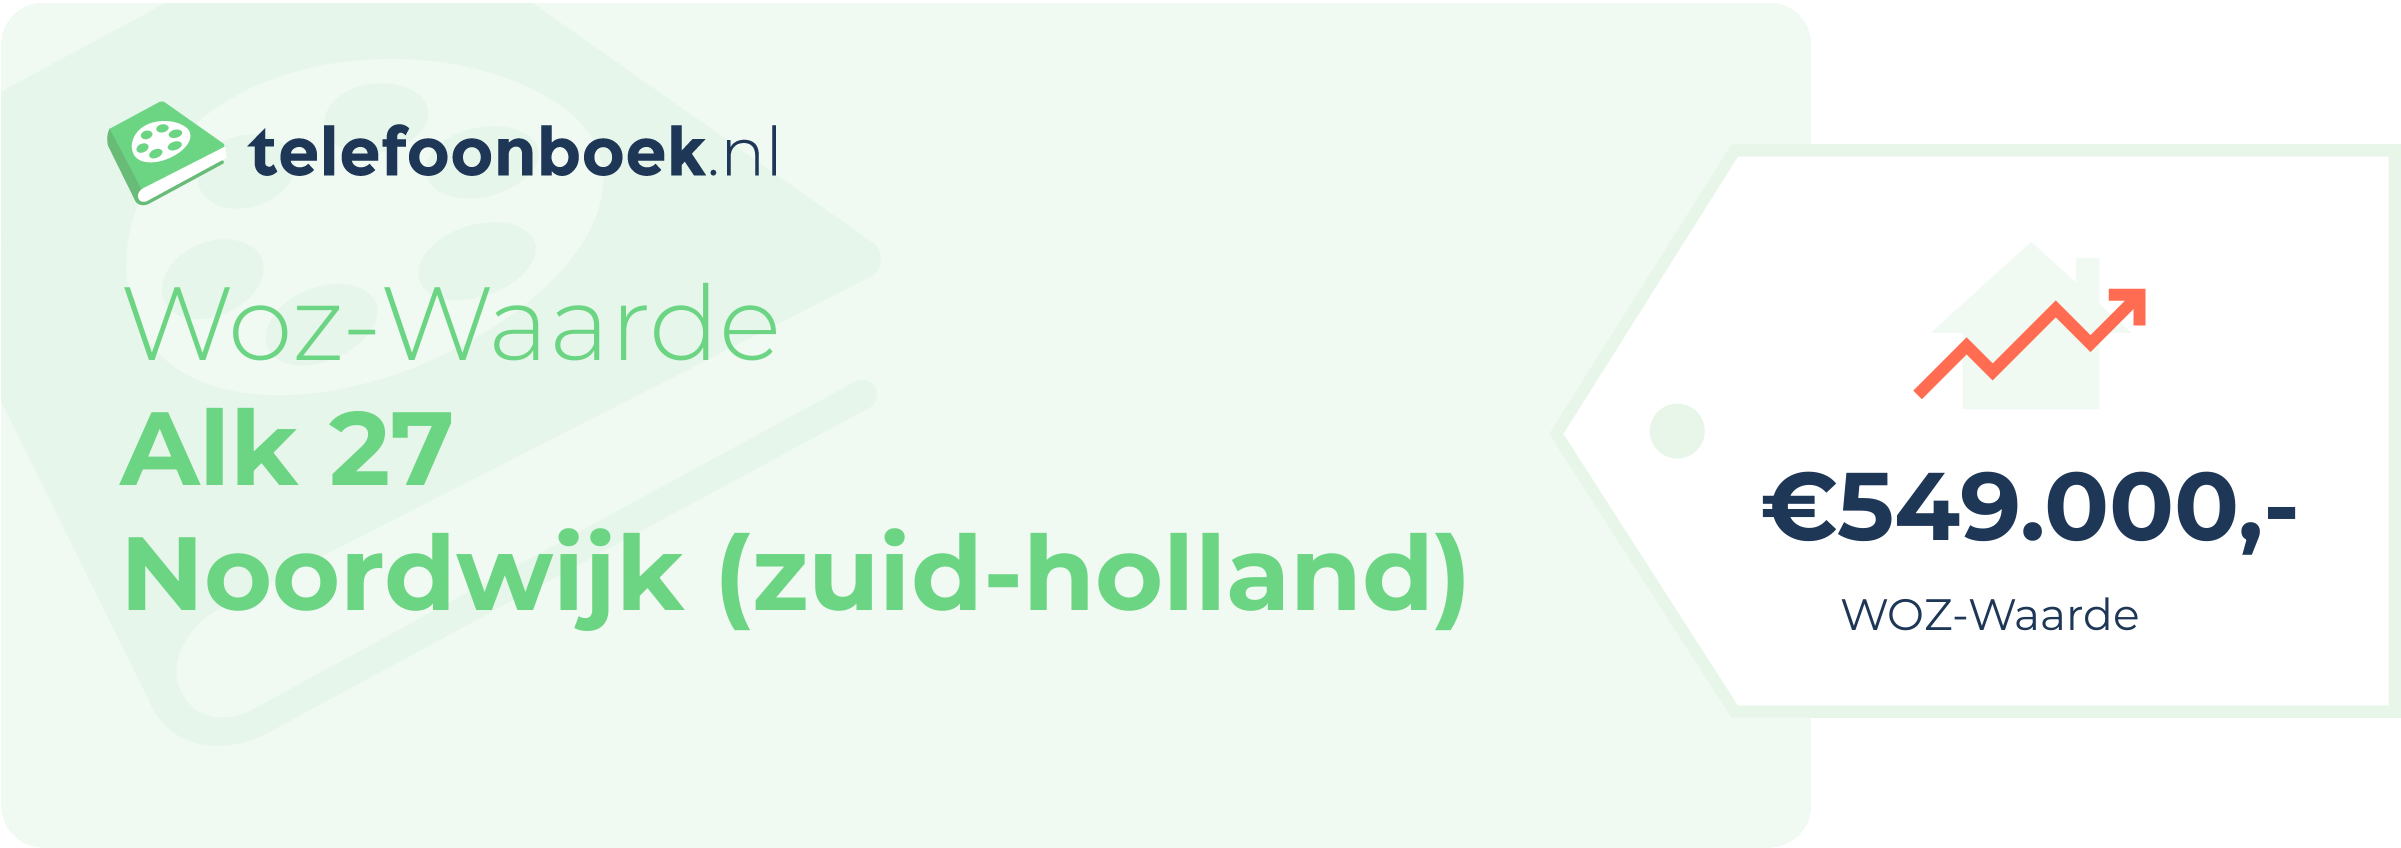 WOZ-waarde Alk 27 Noordwijk (Zuid-Holland)